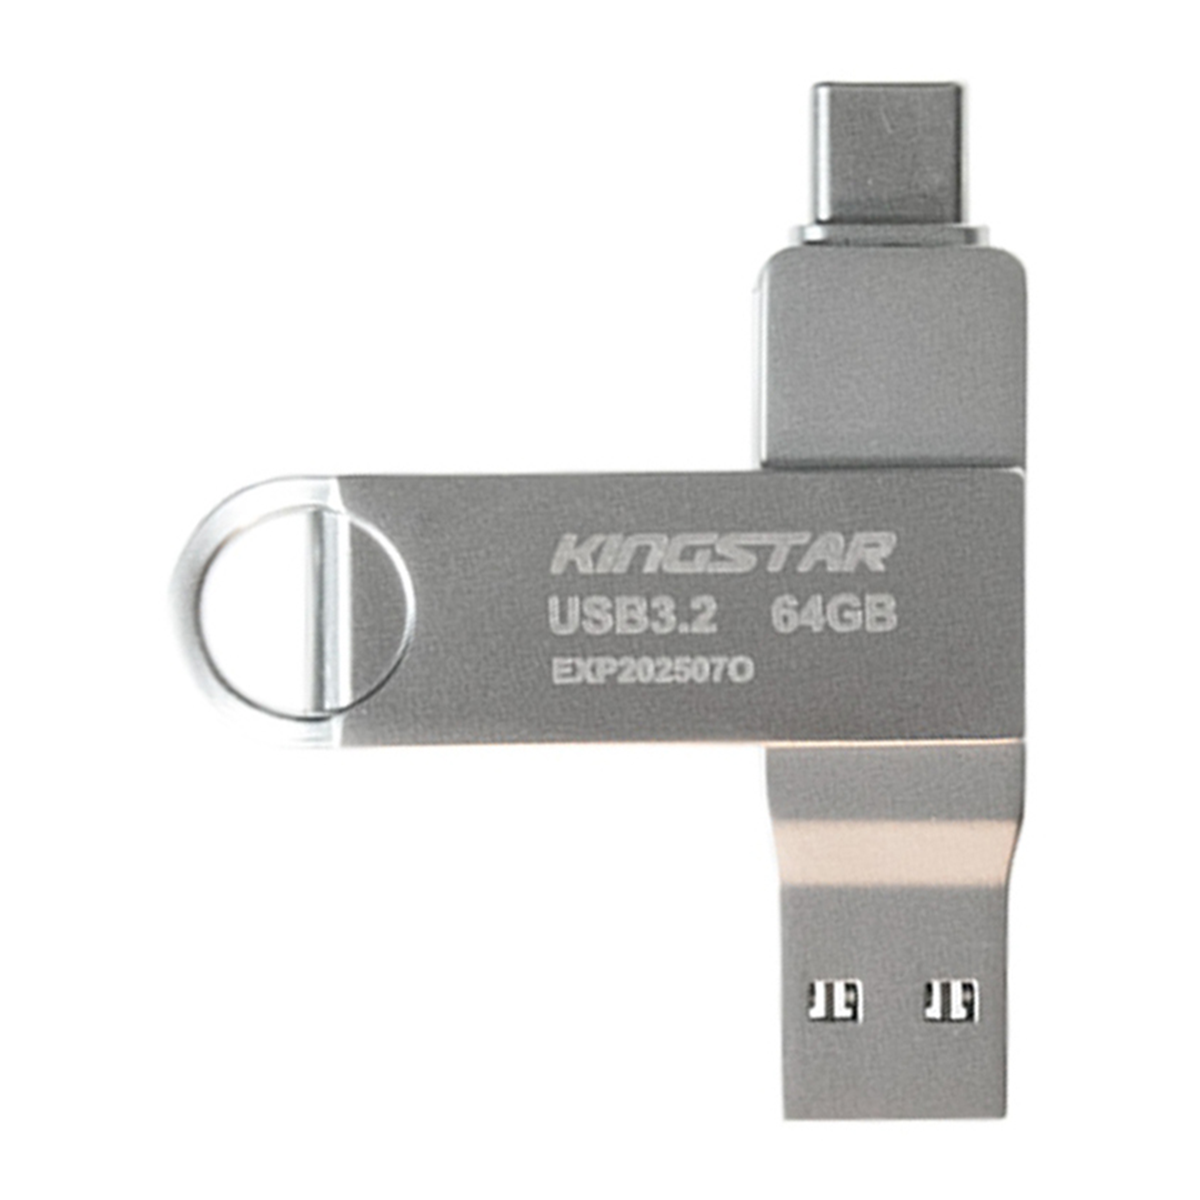 فلش مموری پاتریوت مدل C60 USB 3.2 ظرفیت 64 گیگابایت